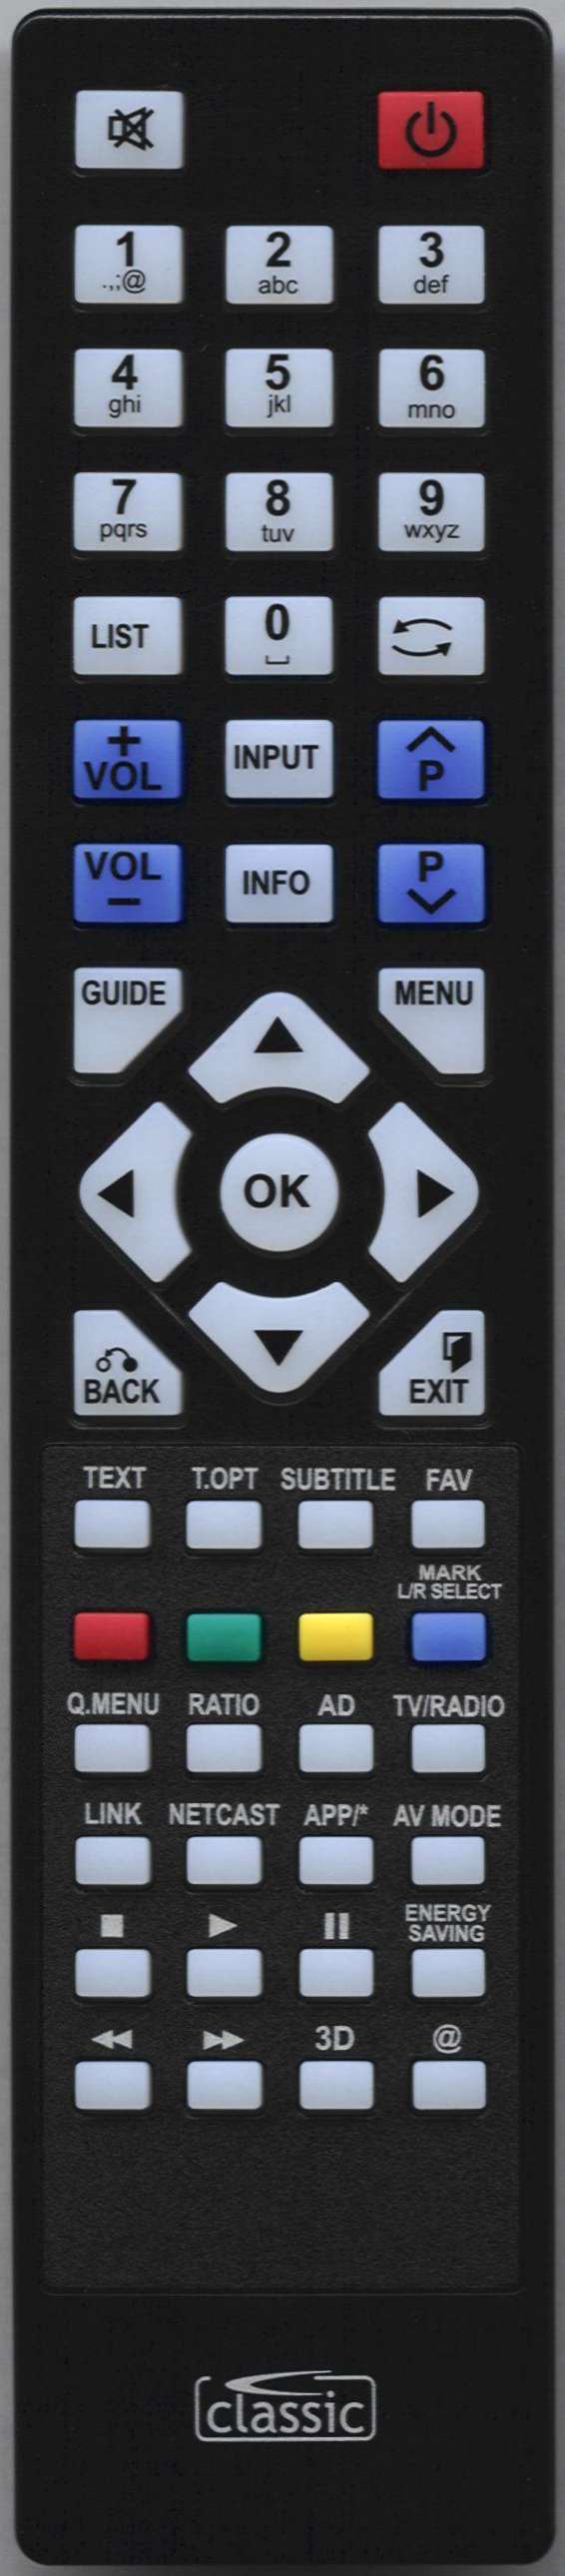 LG 19LE3308-ZA Remote Control